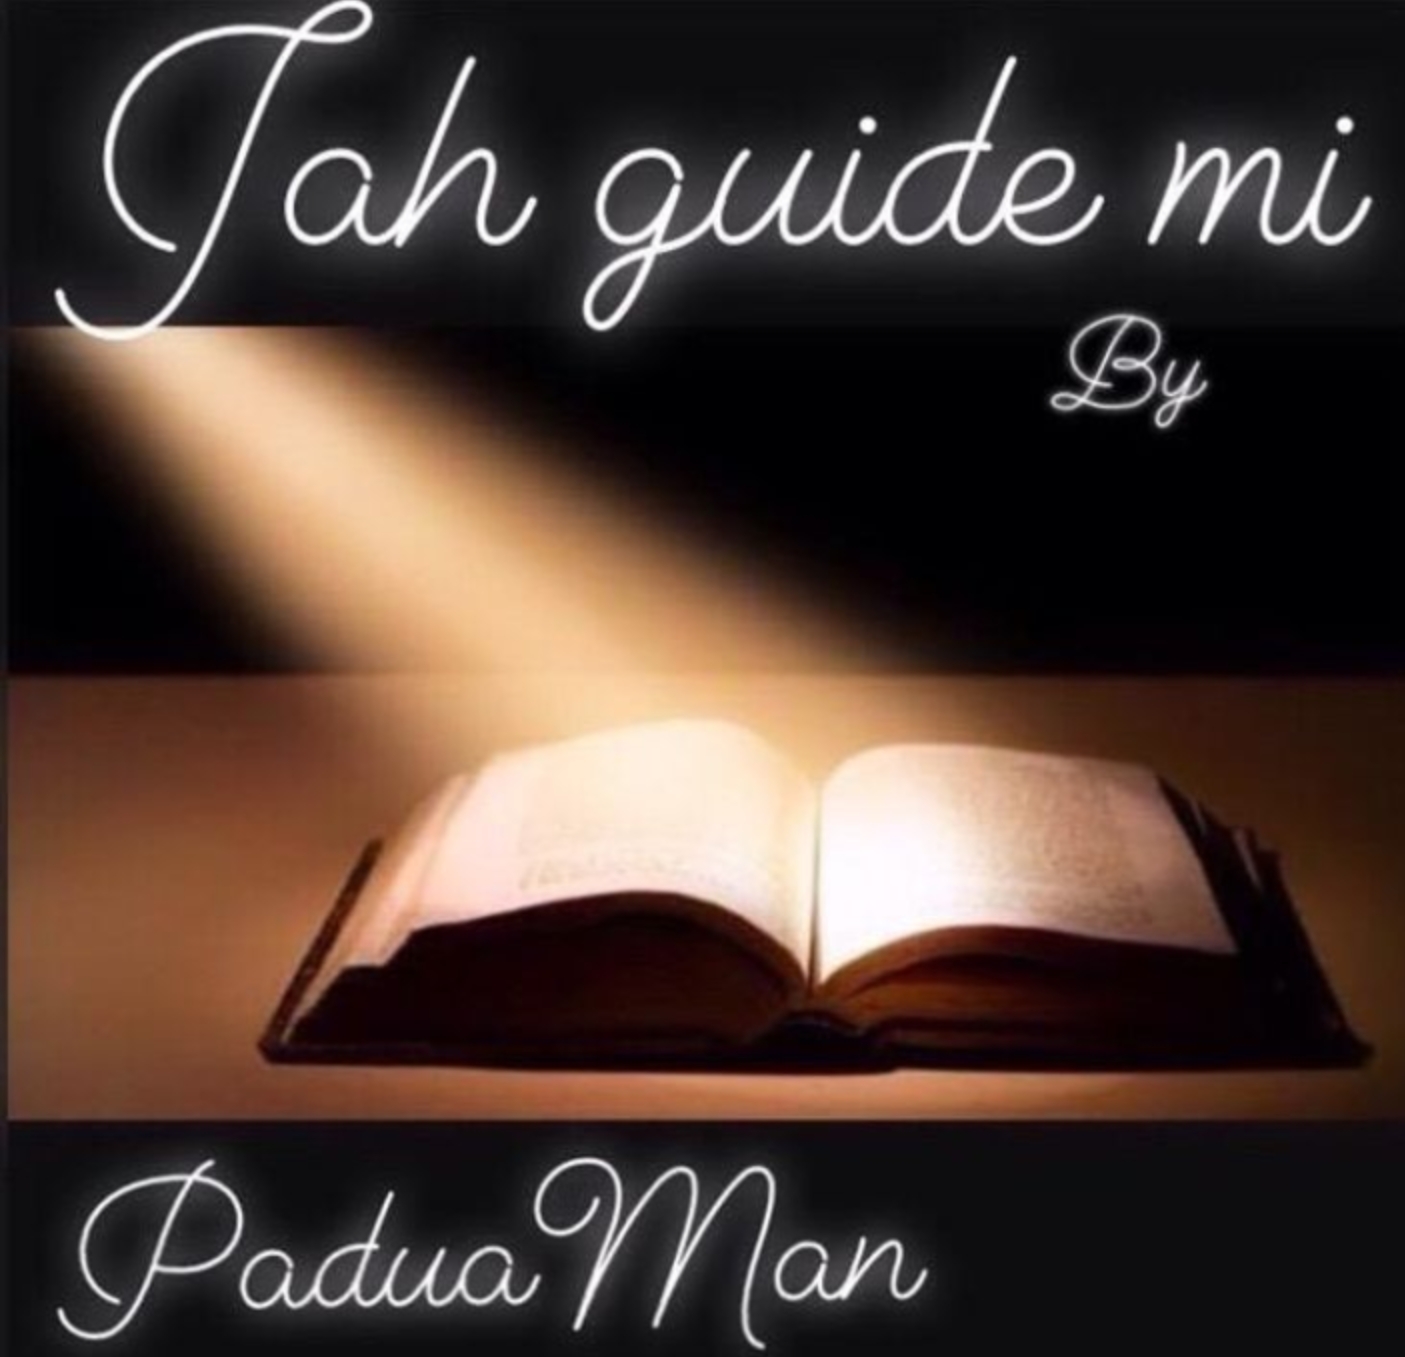 Jah Guide Mi (Ft Padua Man)